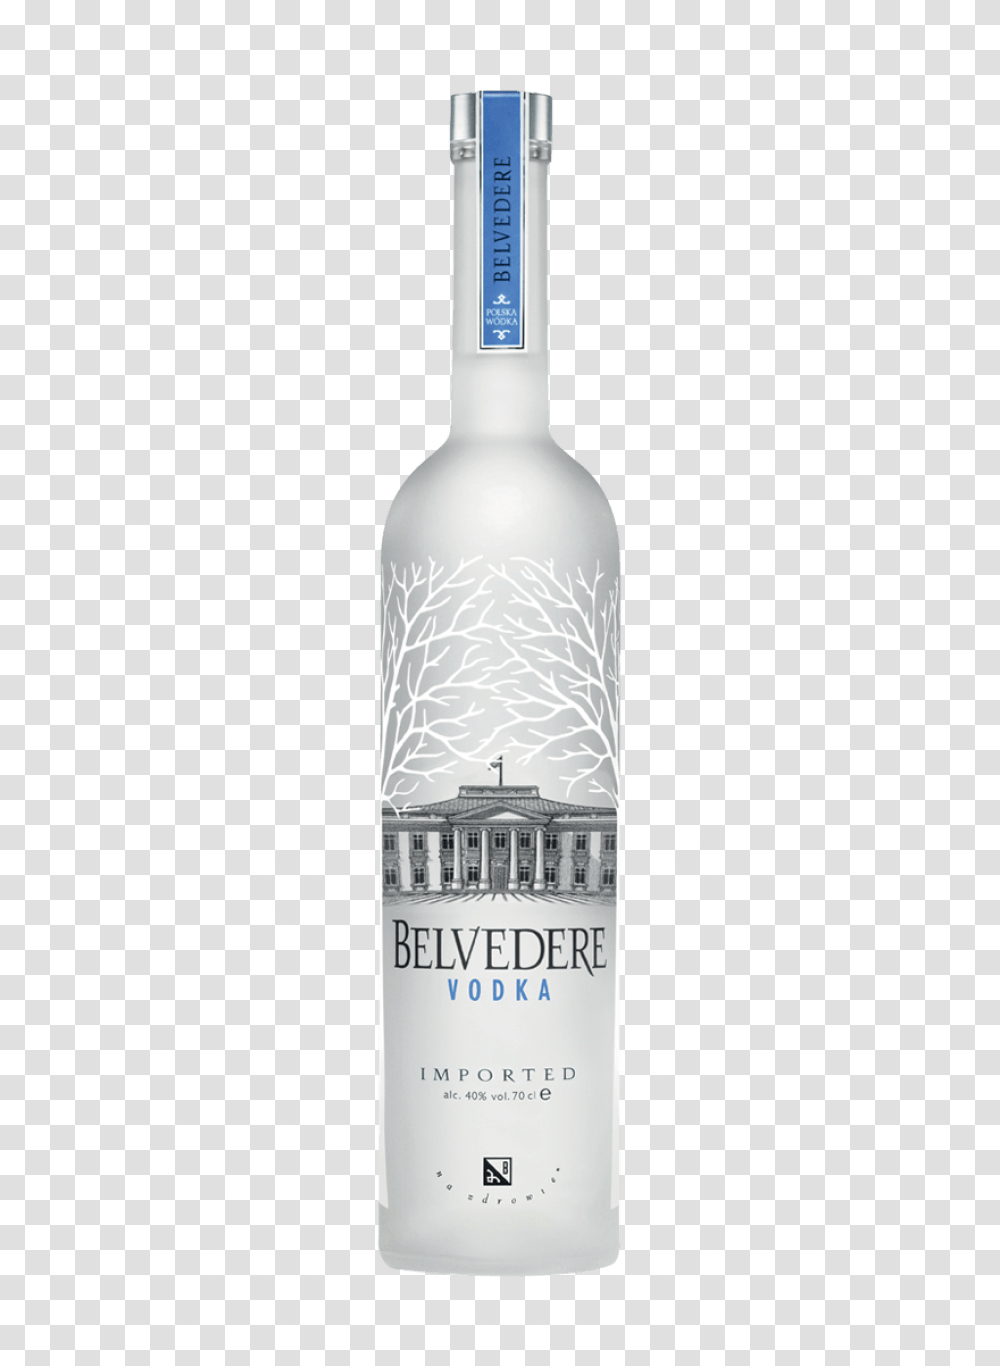 Download Image Hq Freepngimg Belvedere Vodka 1.75 Liter, Liquor, Alcohol, Beverage, Drink Transparent Png